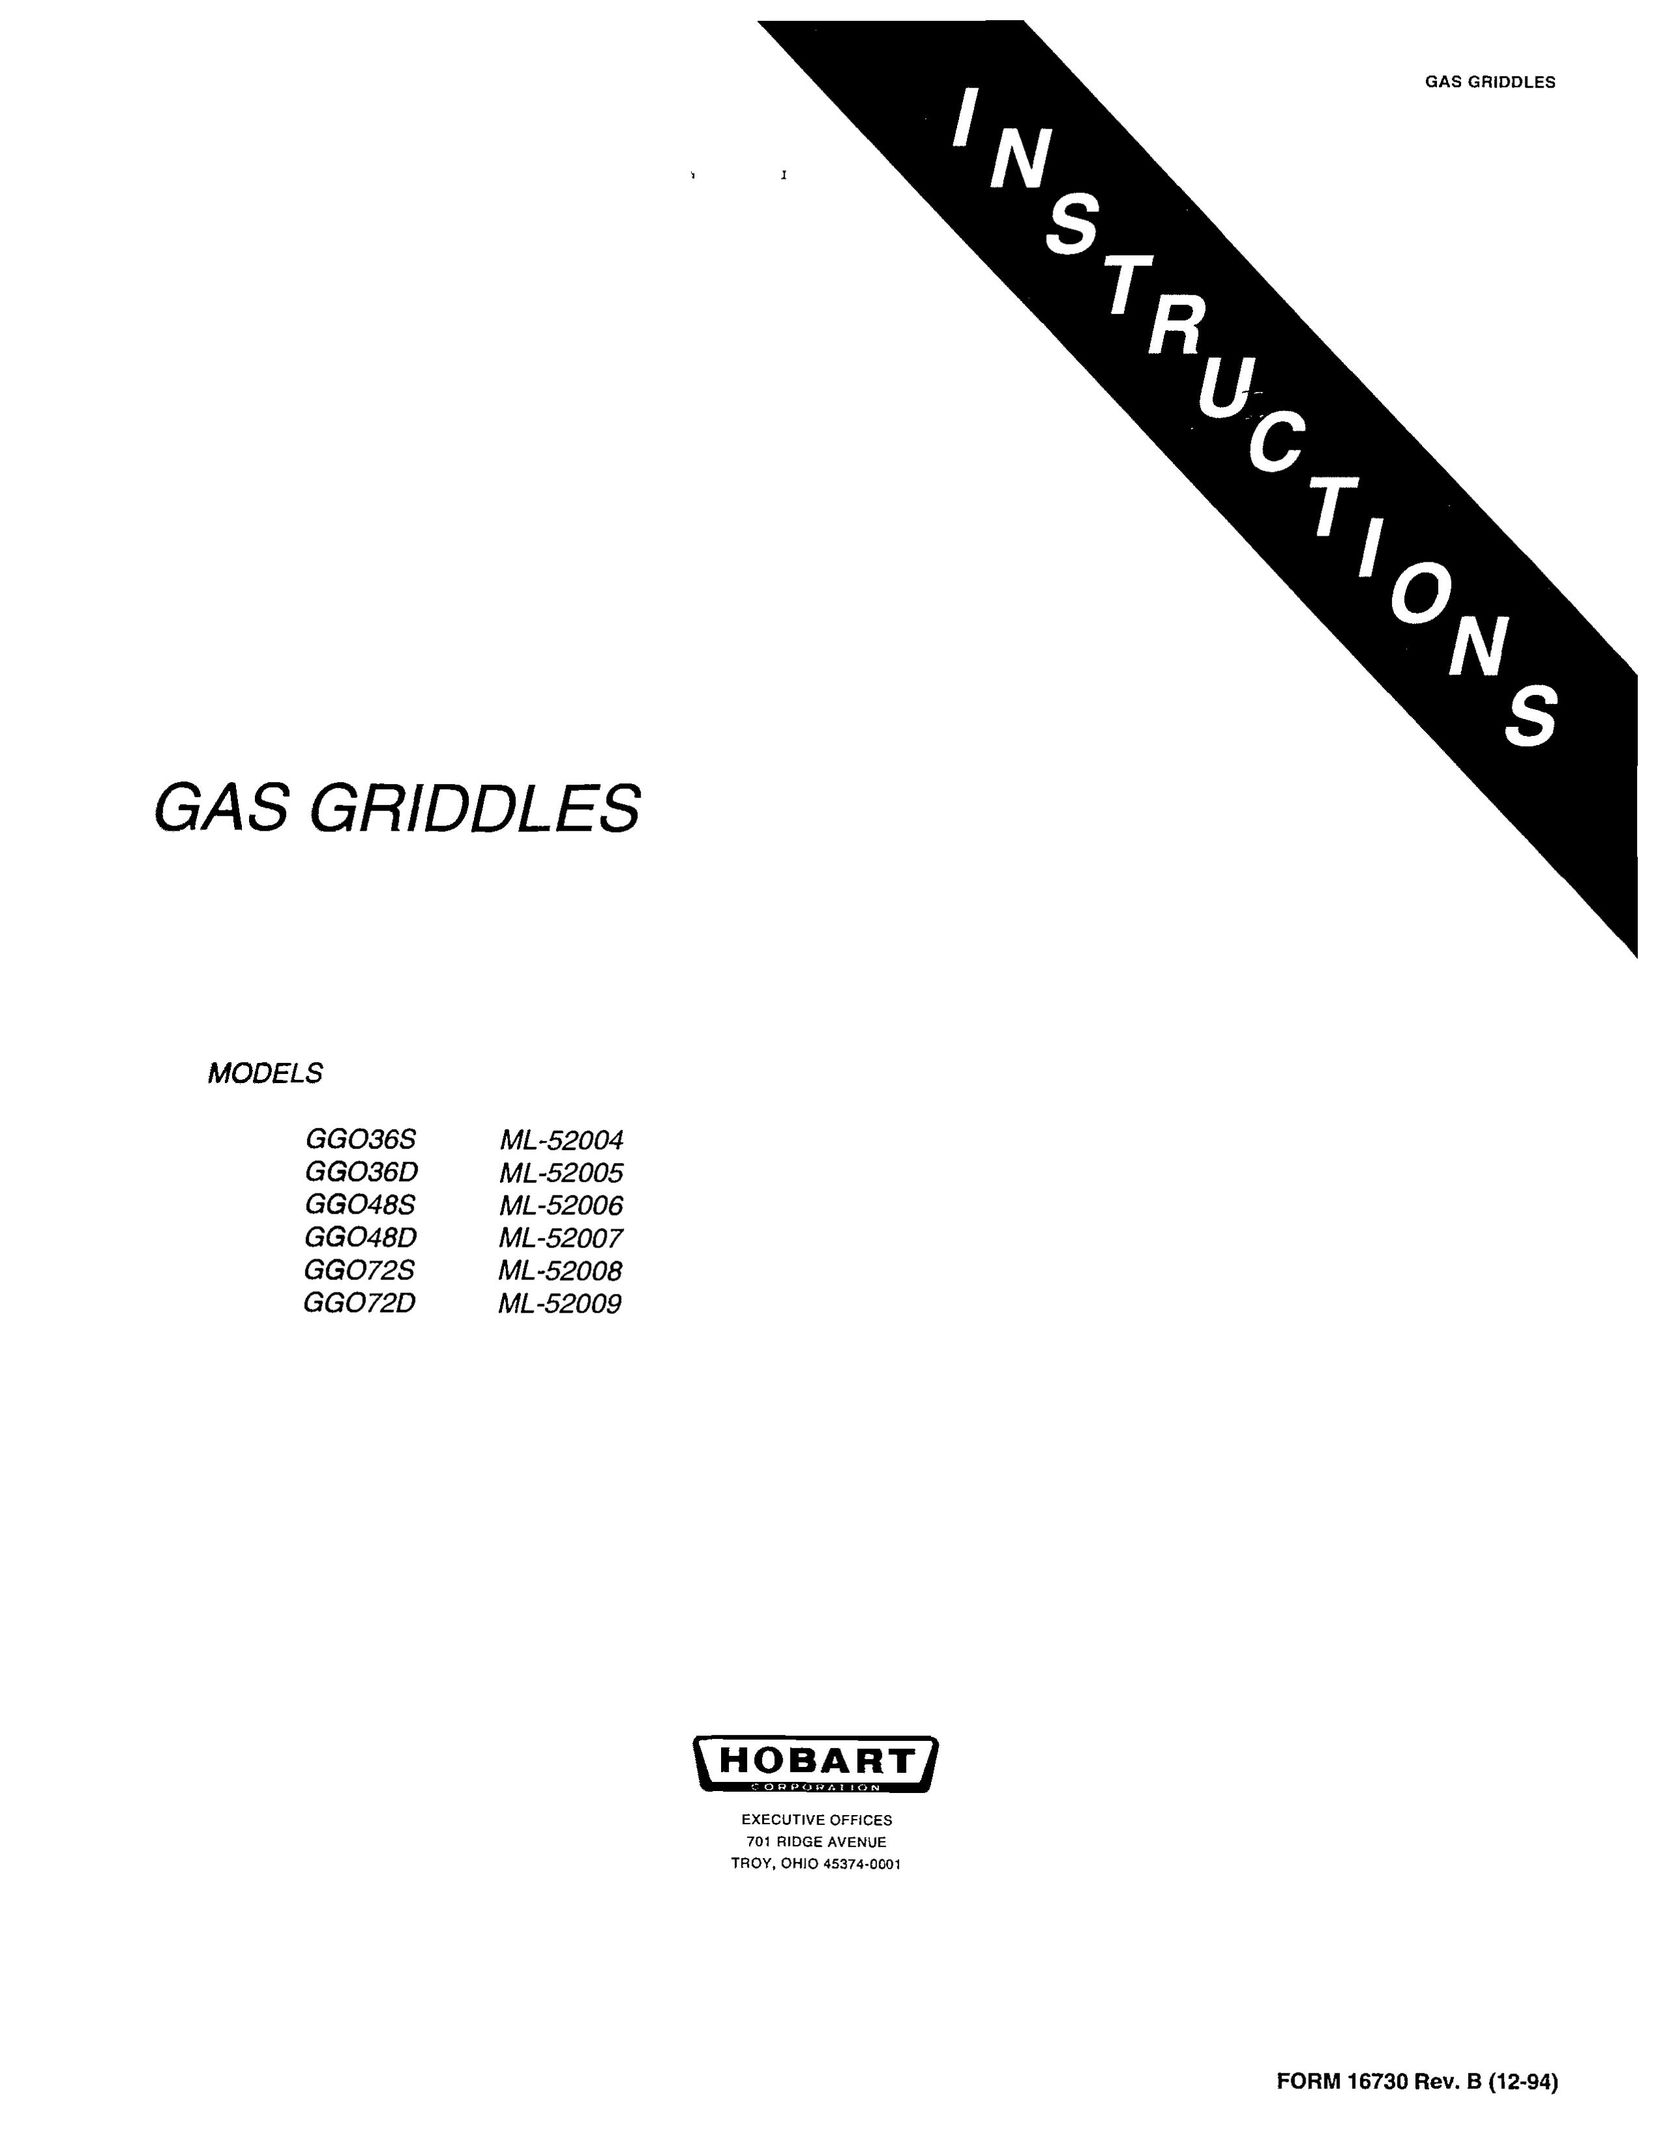 Hobart GGO48D Griddle User Manual